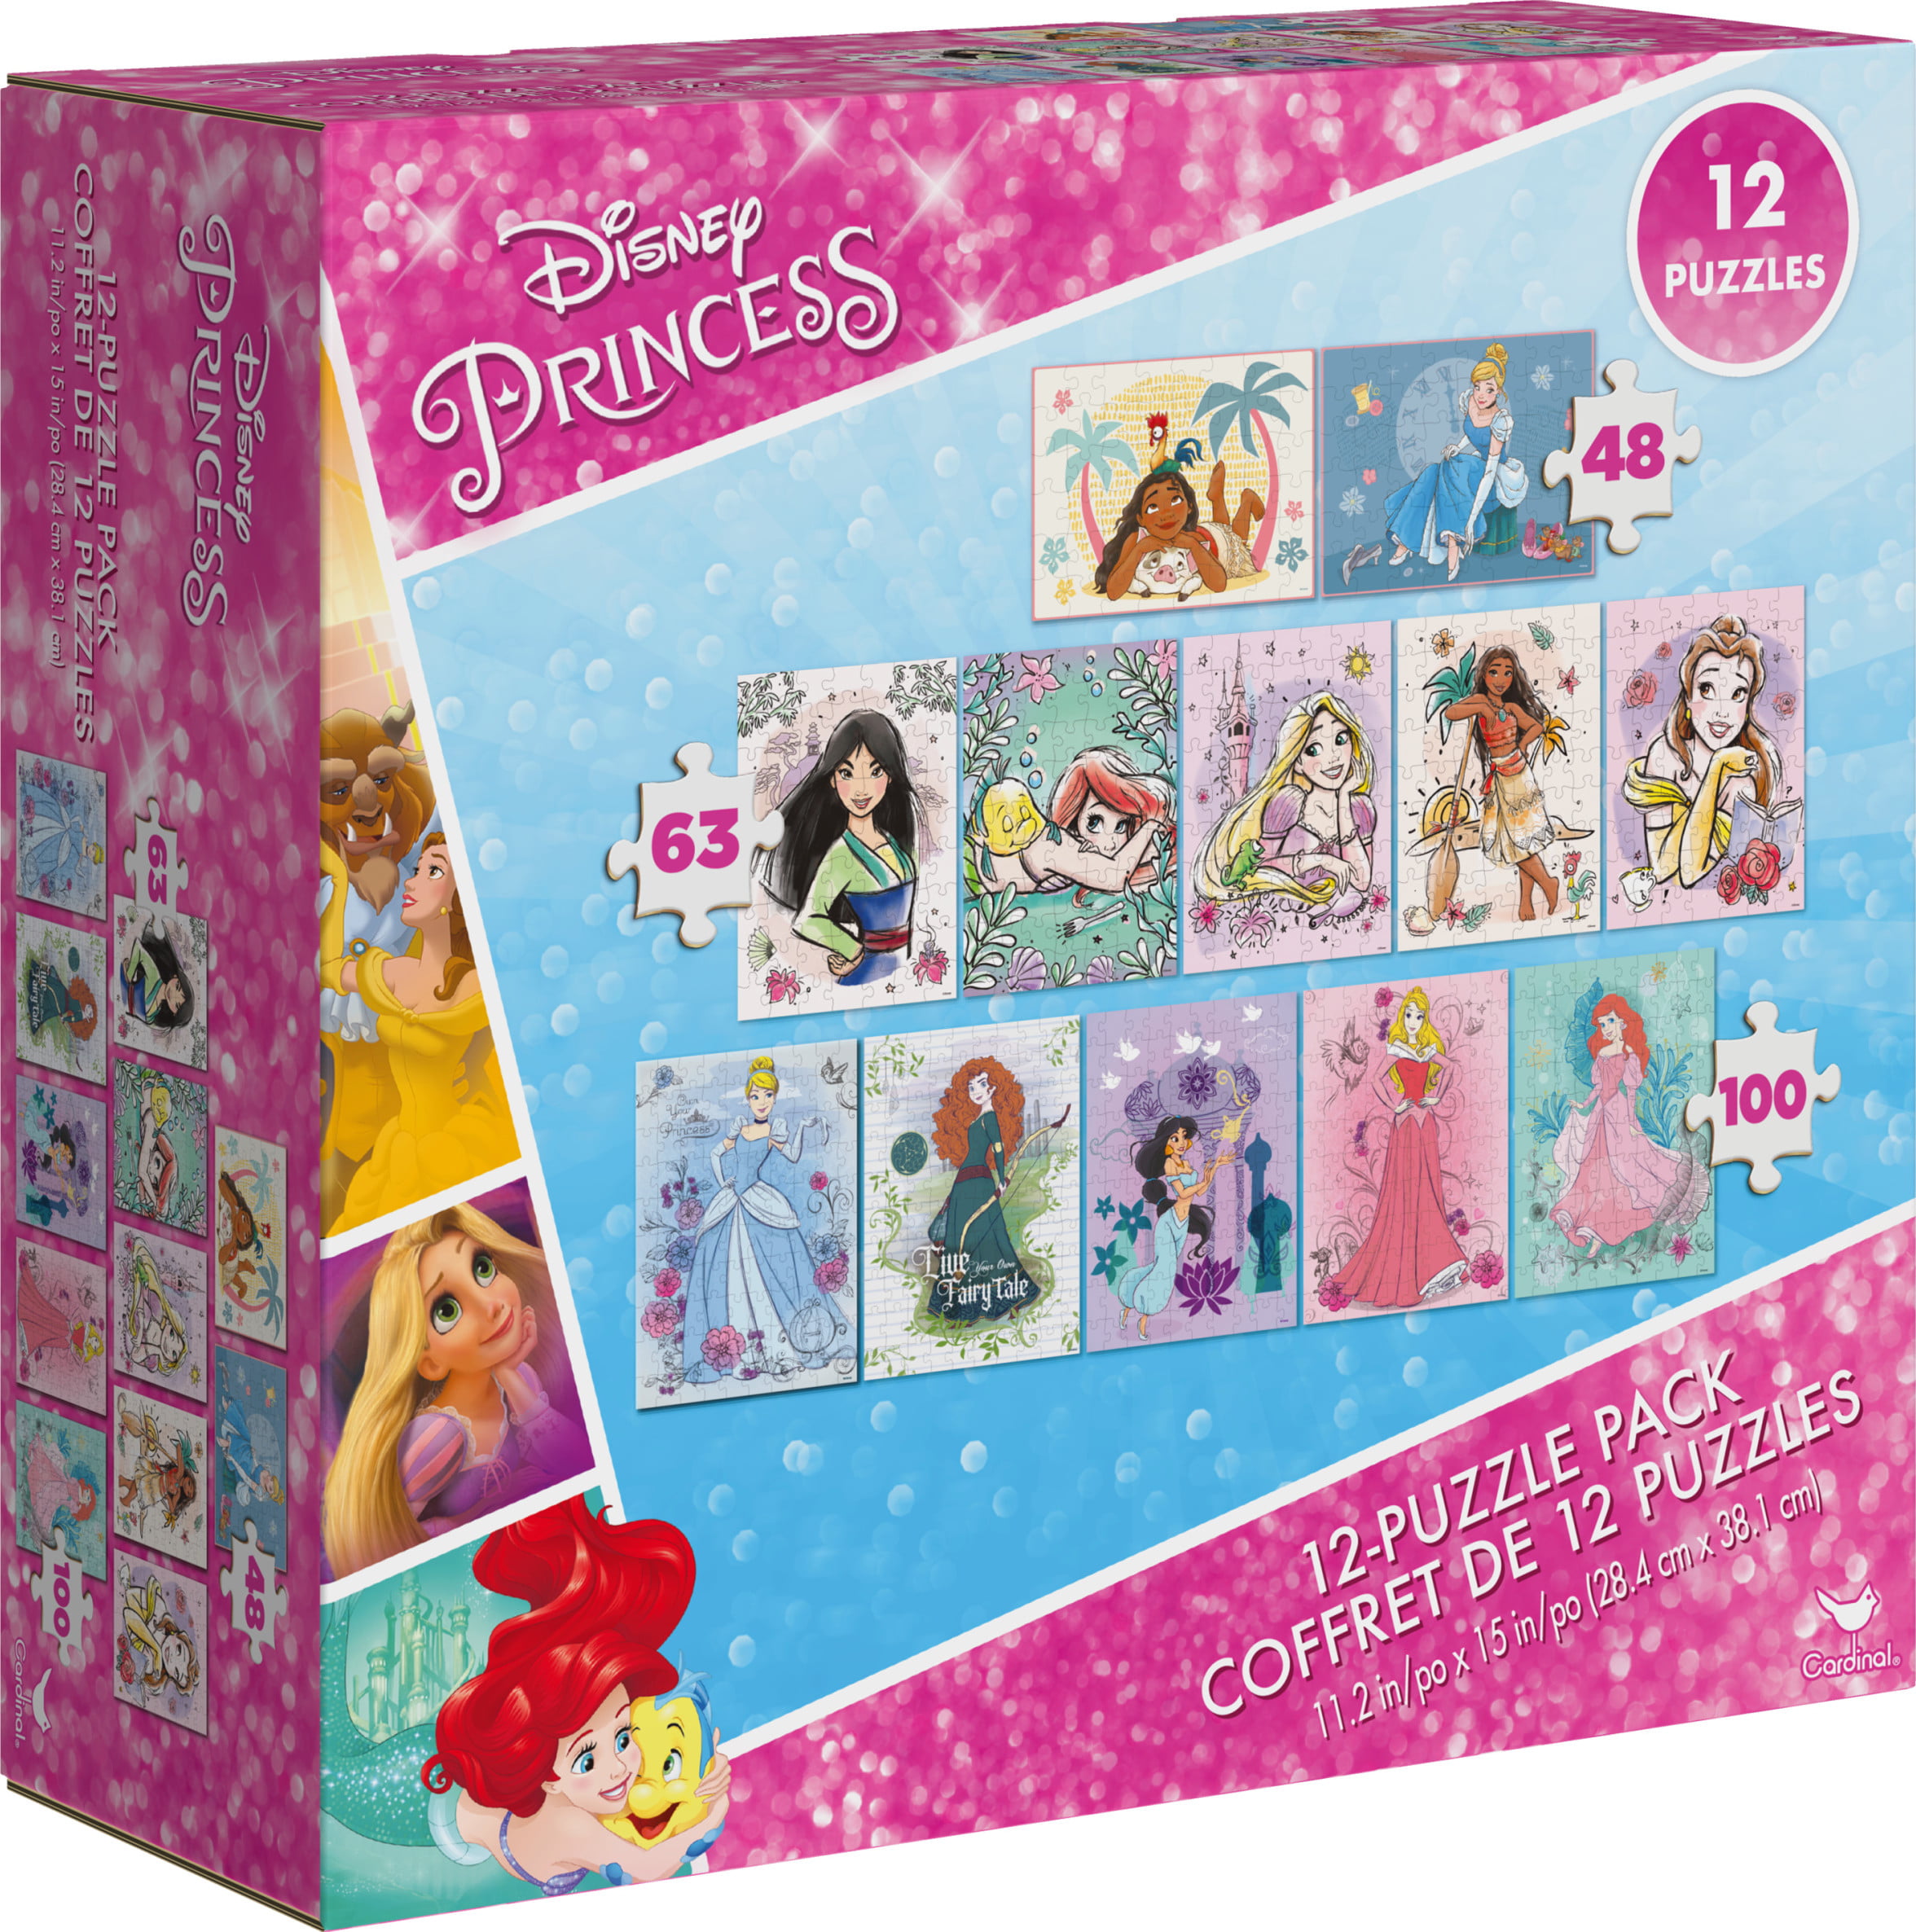 NEW Disney Princess 12 Puzzle Pack Coffret de 12 Separate kids Puzzles jigsaw